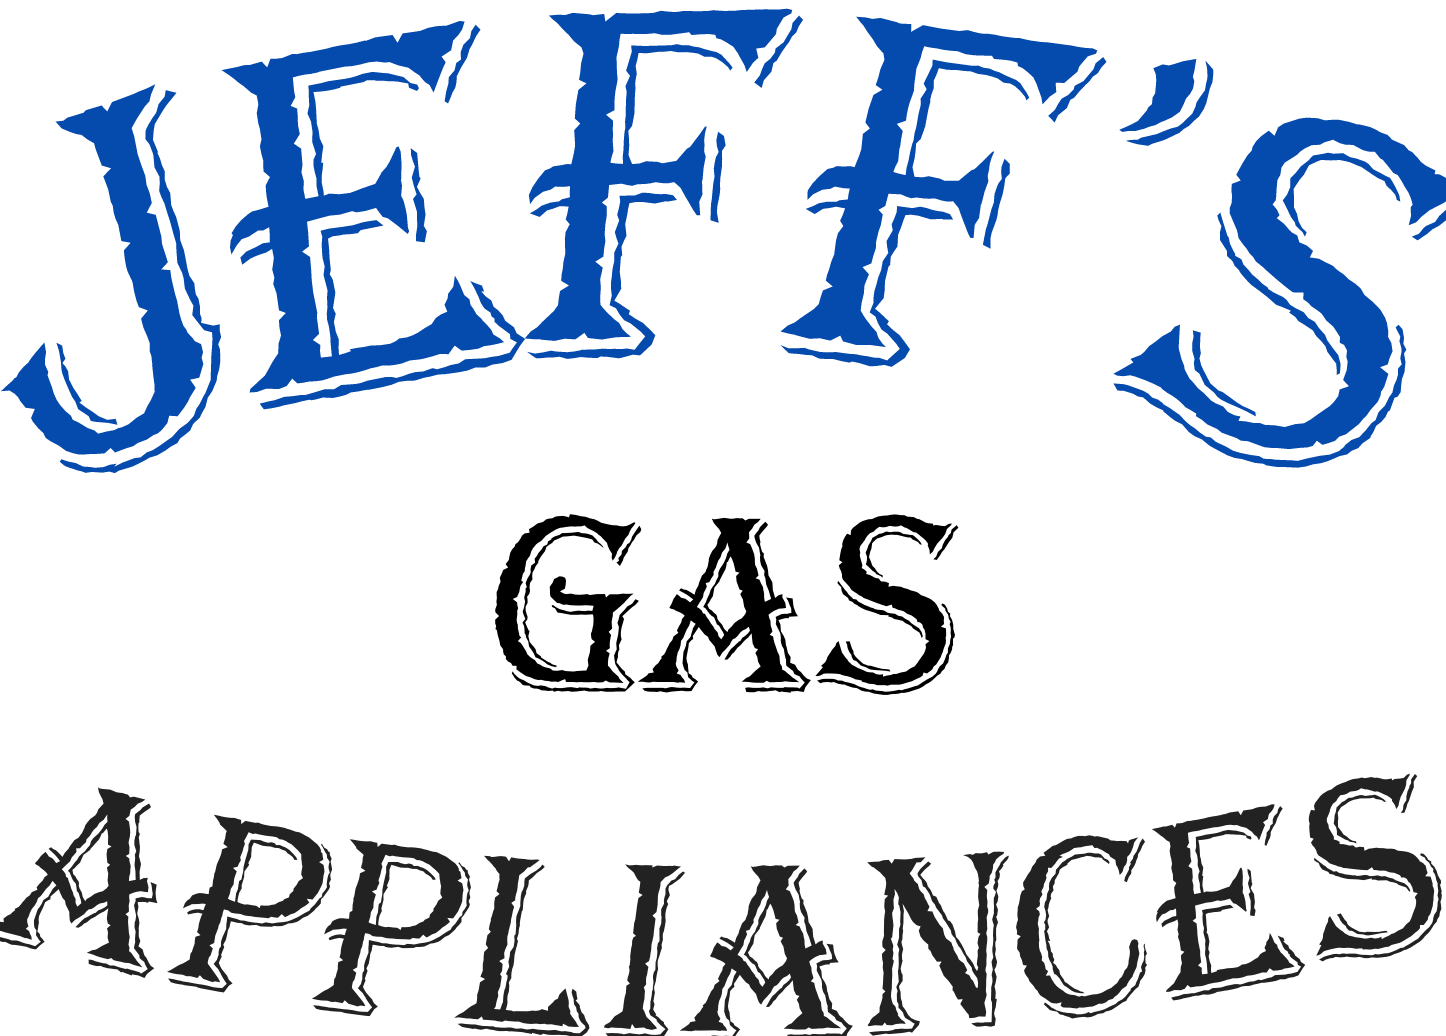 Jeff's Gas Appliances logo